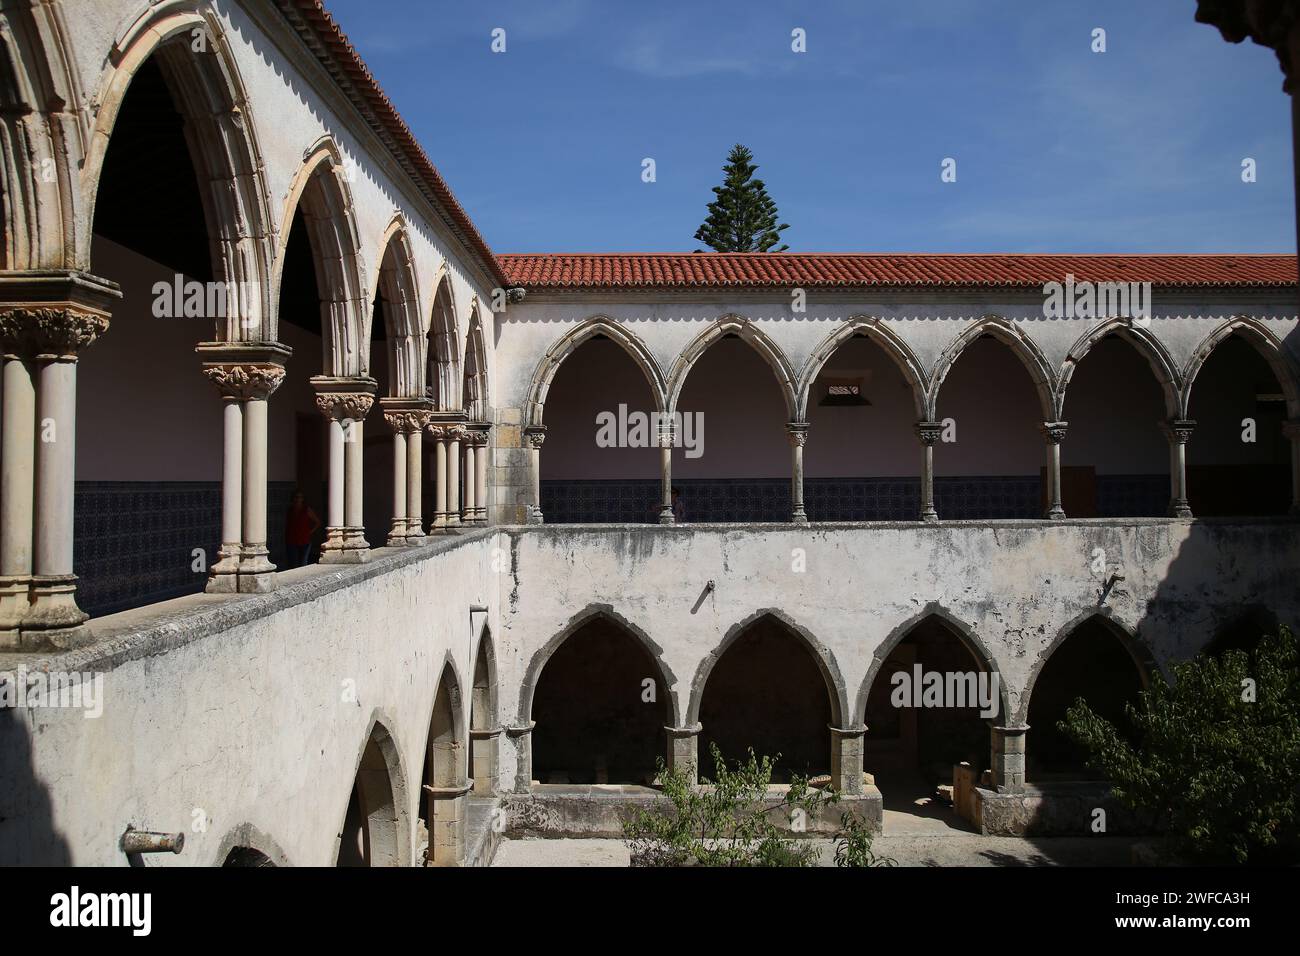 Convento de Cristo, Tomar, Ribatejo Province, Portugal. Stock Photo